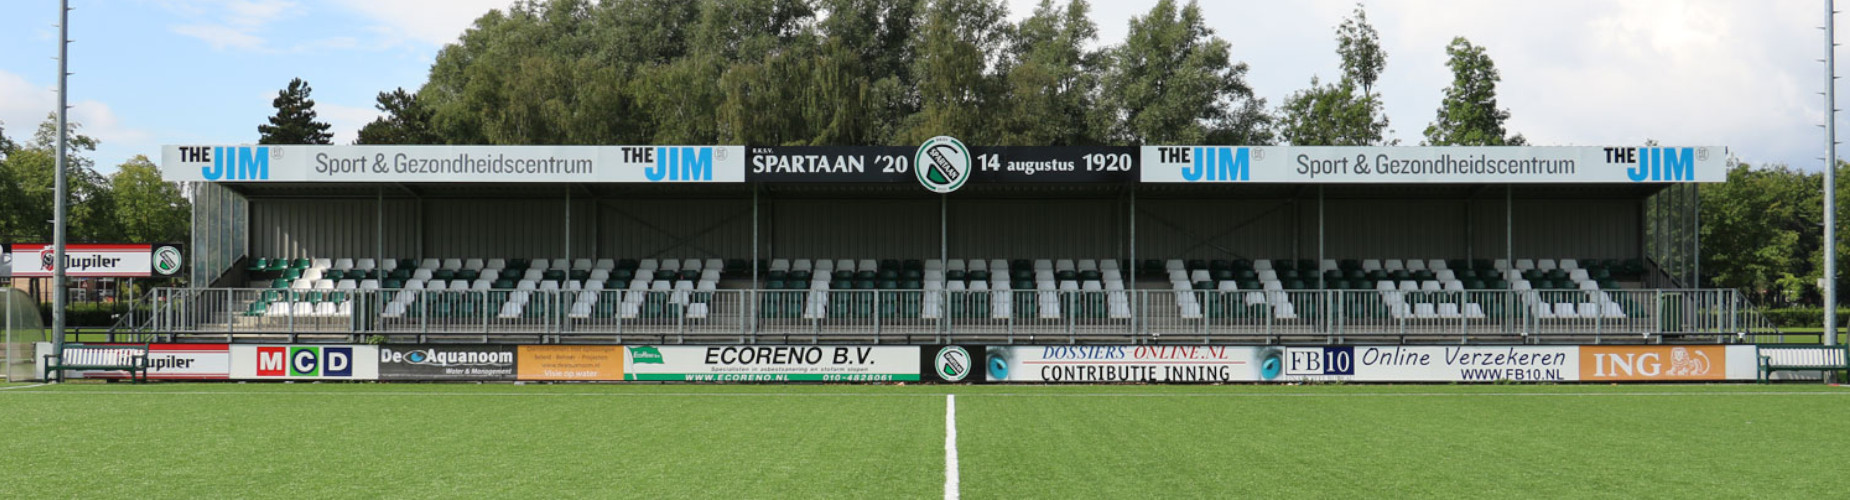 Banner - Spartaan’20 - Rotterdam